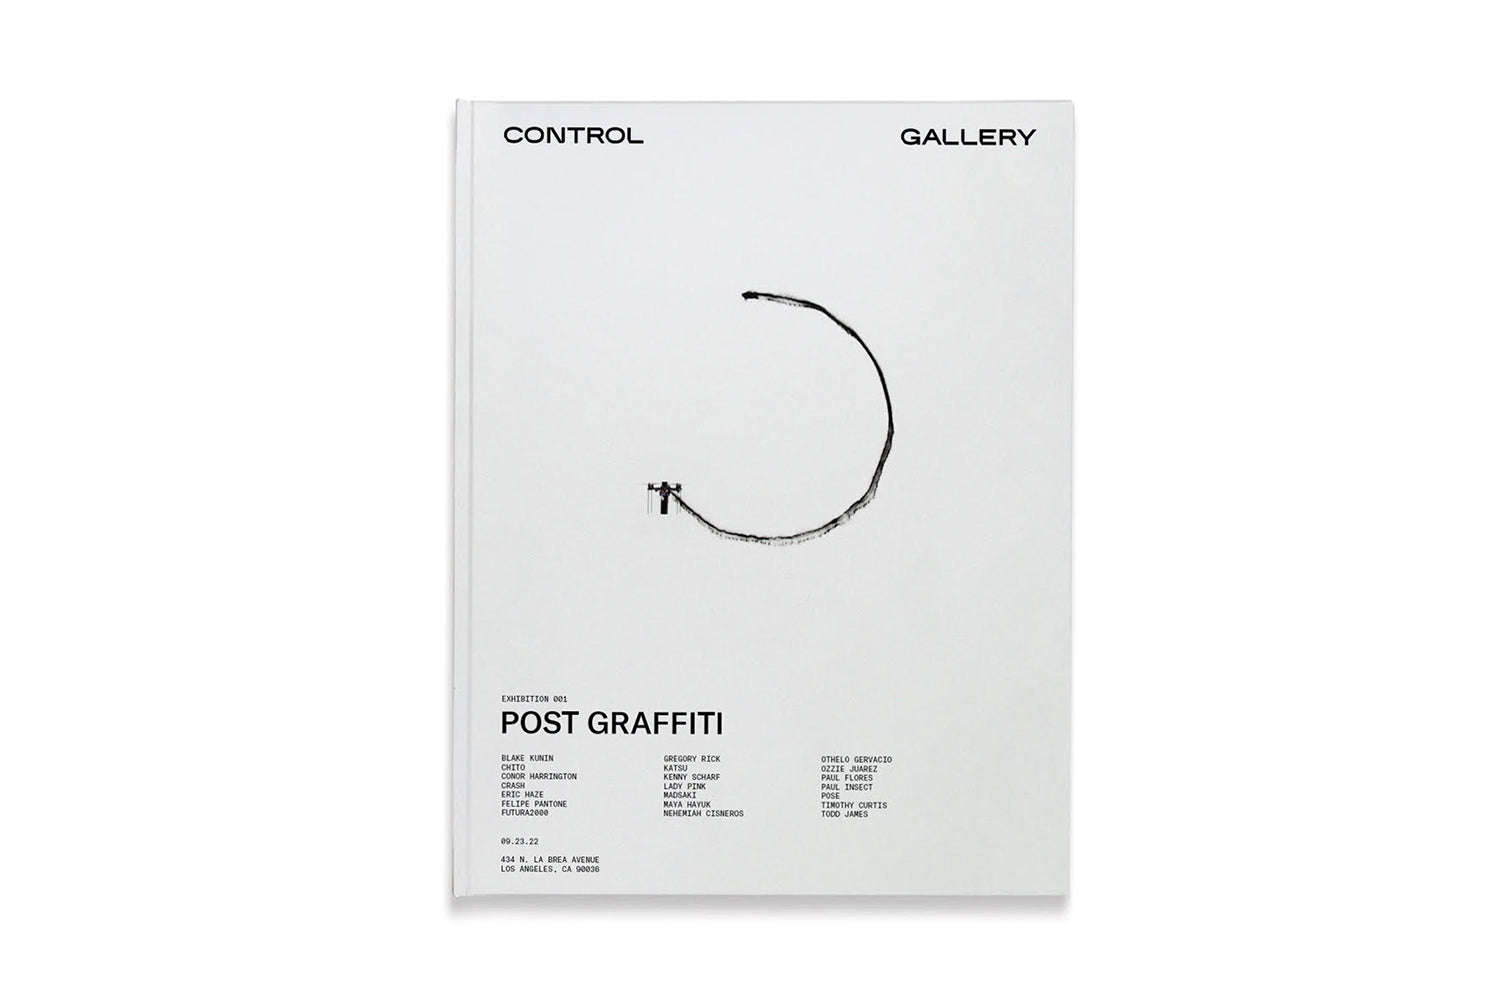 CONTROL Gallery "Exhibition 001: POST GRAFFITI" Catalogue